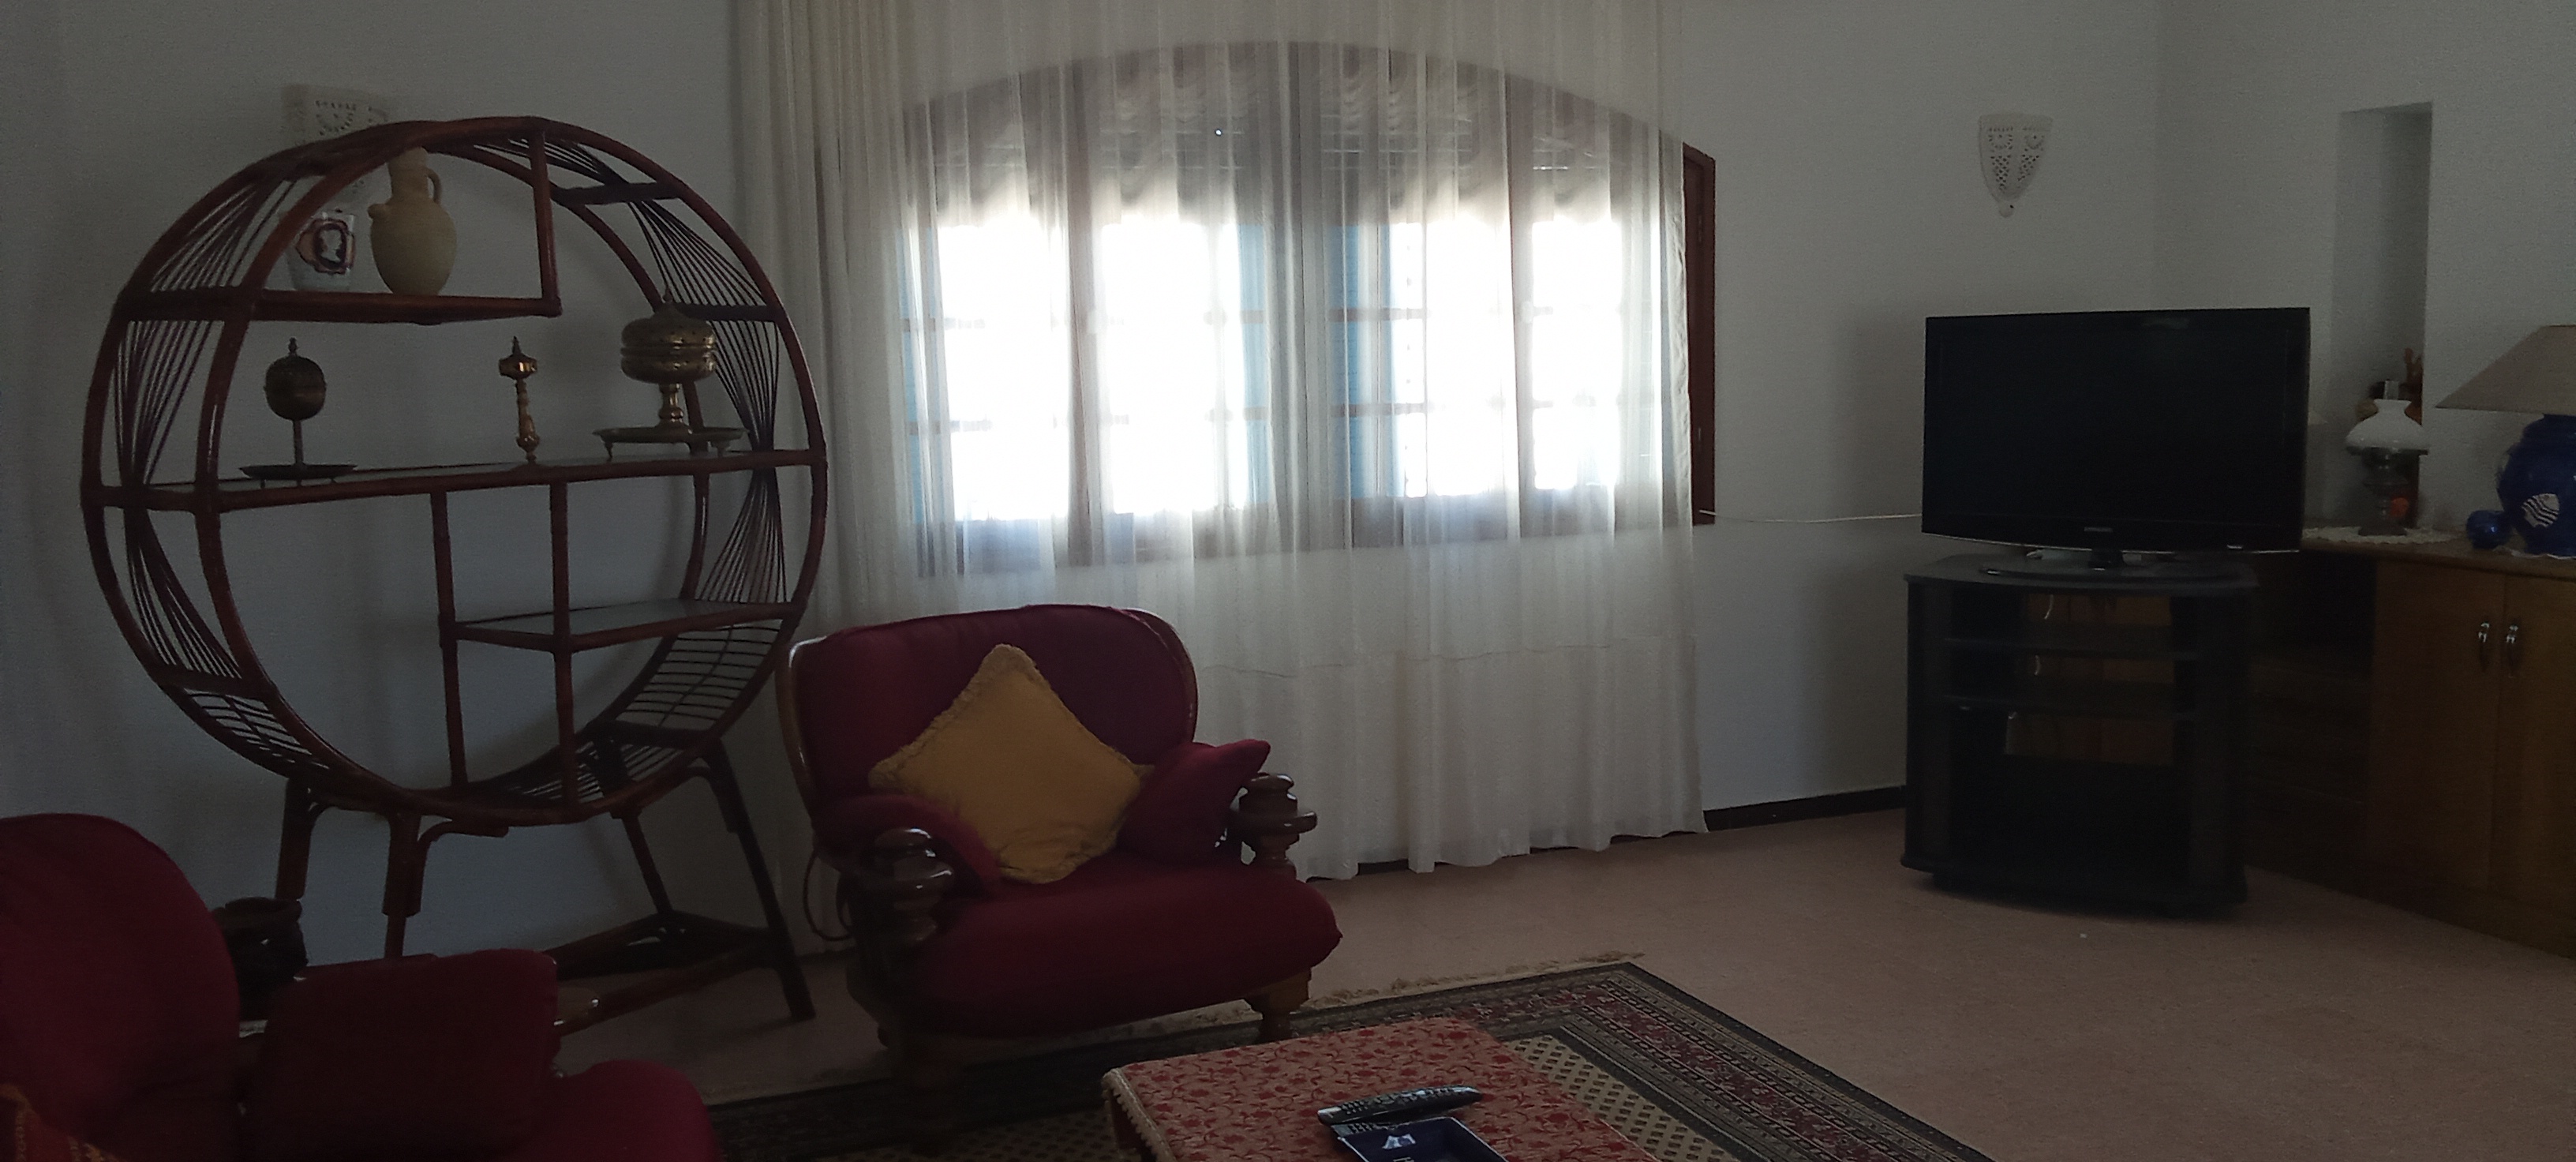 Djerba - Midoun Zone Hoteliere Location Maisons Villa meuble dans la zone touristique djerba